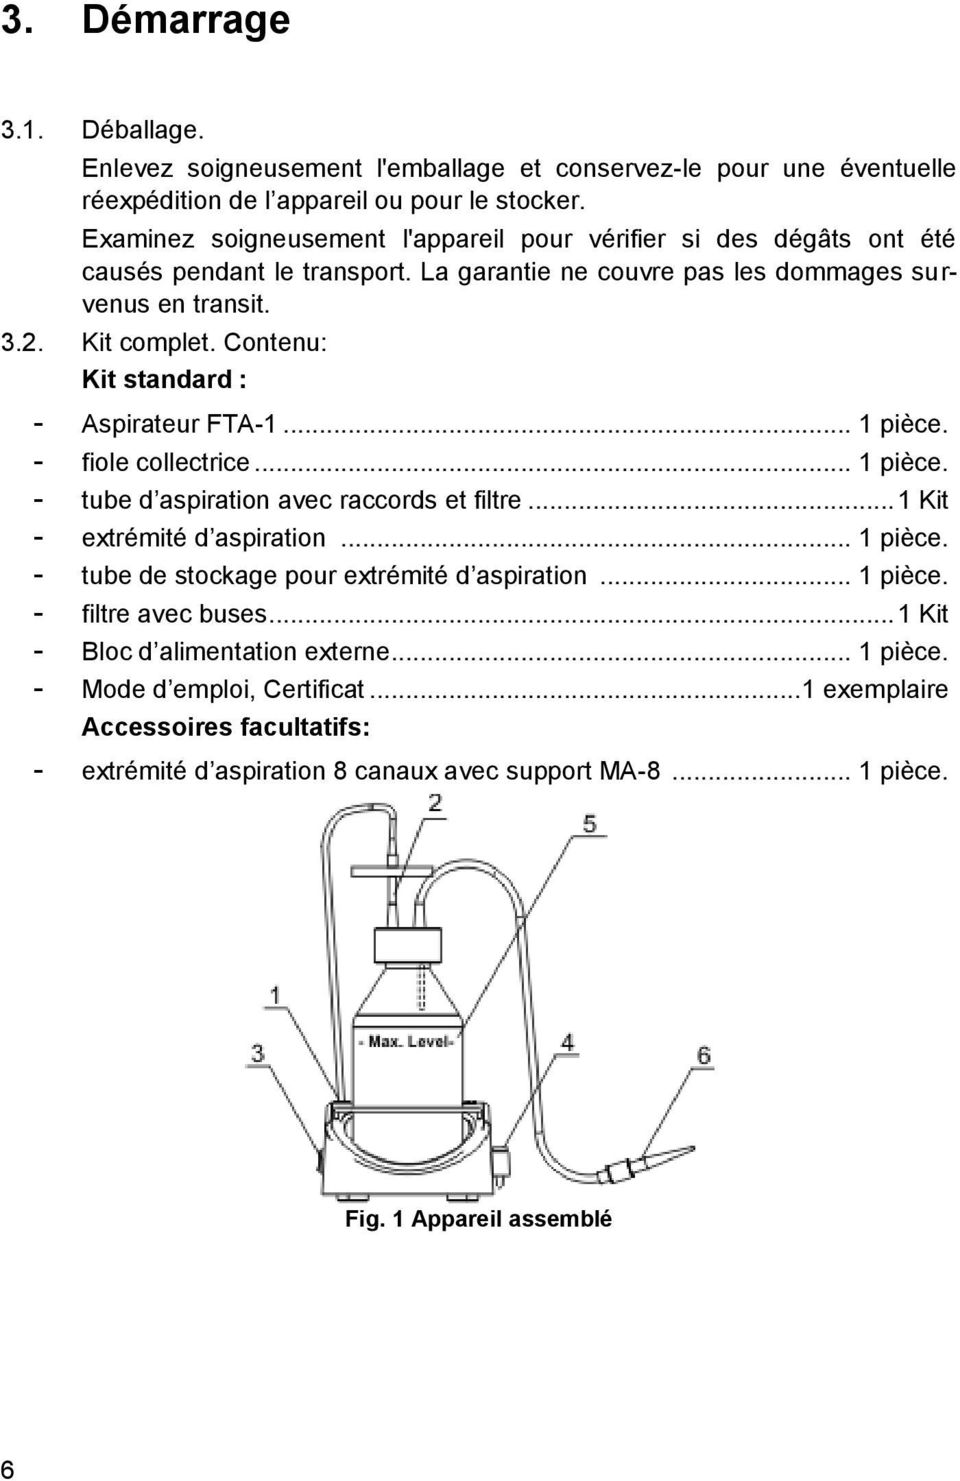 Contenu: Kit standard : - Aspirateur FTA-1... 1 pièce. - fiole collectrice... 1 pièce. - tube d aspiration avec raccords et filtre... 1 Kit - extrémité d aspiration... 1 pièce. - tube de stockage pour extrémité d aspiration.